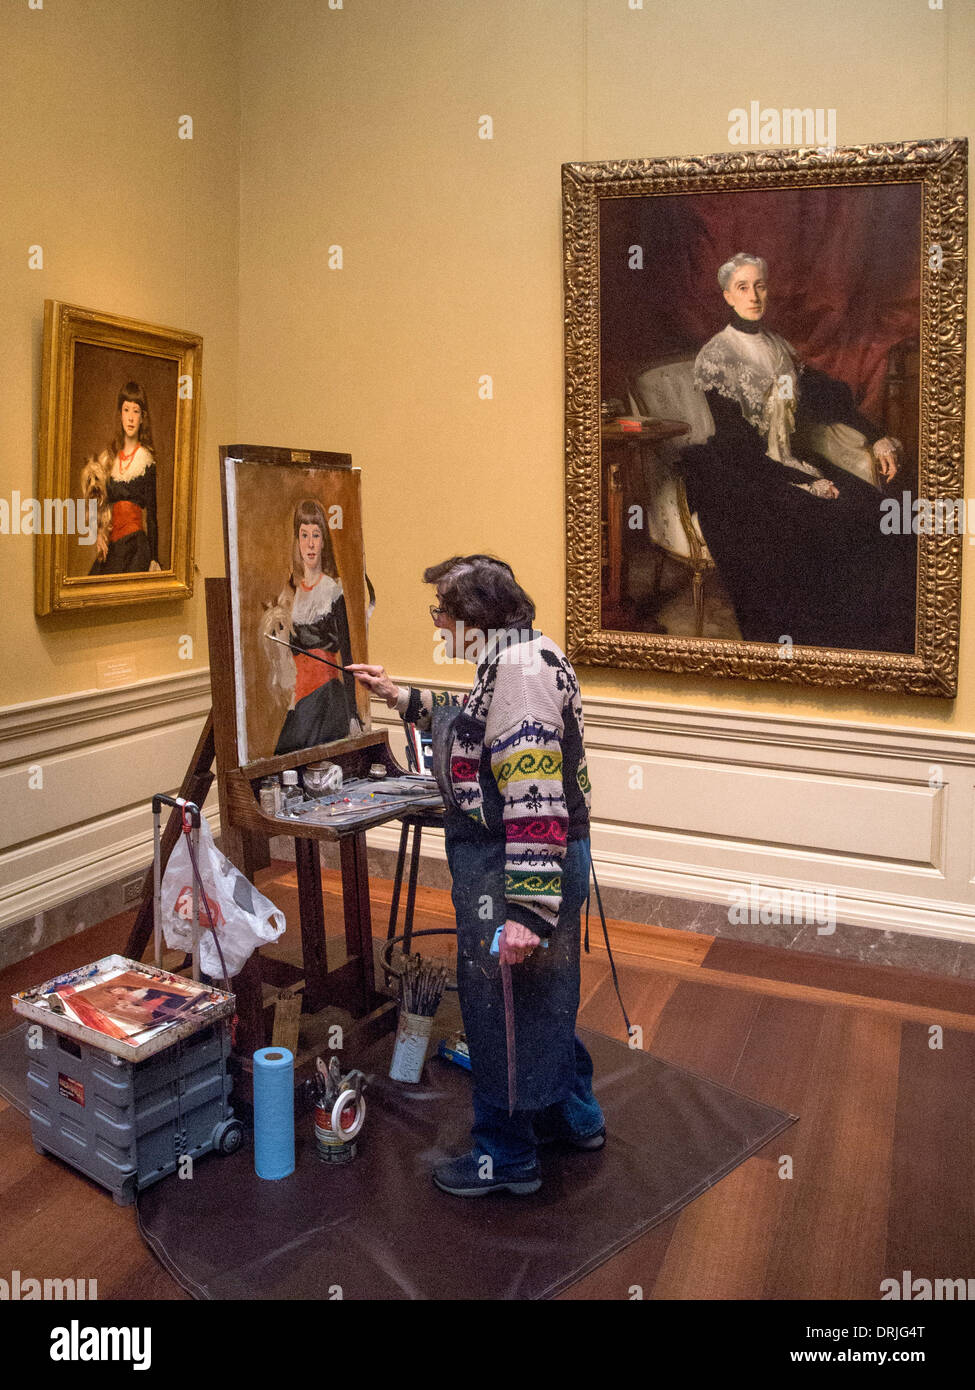 Travaillant au chevalet dans la National Gallery of Art de Washington D.C., un étudiant d'art hispanique peint une copie de John Singer Sargent Banque D'Images